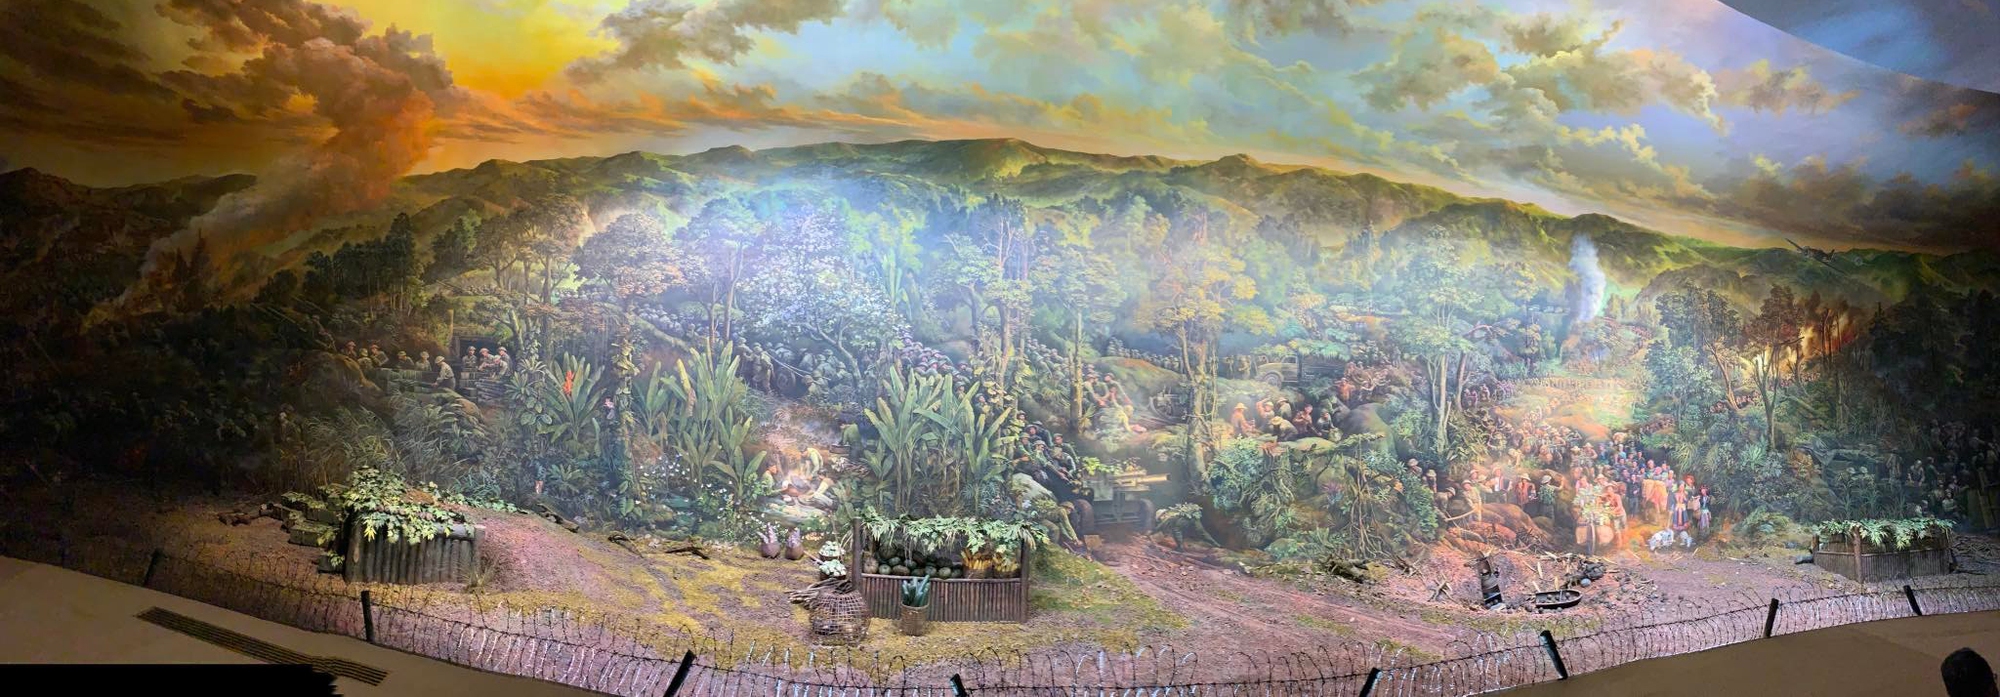 Ấn tượng tranh panorama tái hiện Chiến thắng Điện Biên